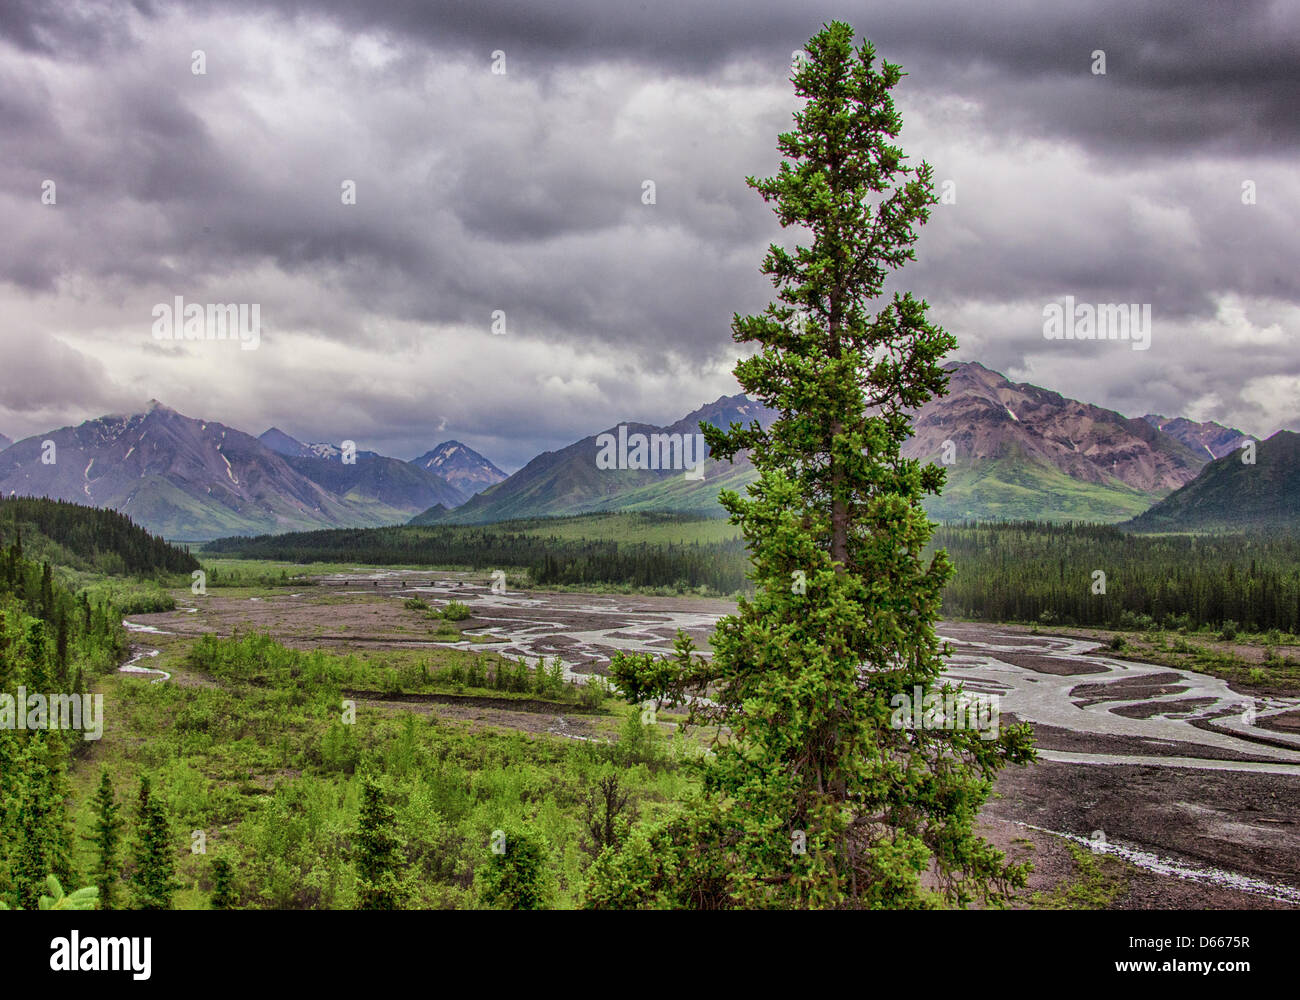 Junio 27, 2012 - Denali Boroigh, Alaska, EE.UU. - El glacial del valle tallado Toklat trenzada, uno de los ríos que atraviesan los bosques boreales y la tundra de los 6 millones de acres (24,500km), el Parque Nacional Denali y preservar. Cargados con residuos de rocas glaciales y el escurrimiento de la nieve que se derrite, modifican y entrelazan sus canales a través de los valles y radicalmente la influencia de la topografía. Las escarpadas montañas de la Cordillera de Alaska aumento en la distancia. (Crédito de la Imagen: © Arnold Drapkin/ZUMAPRESS.com) Foto de stock